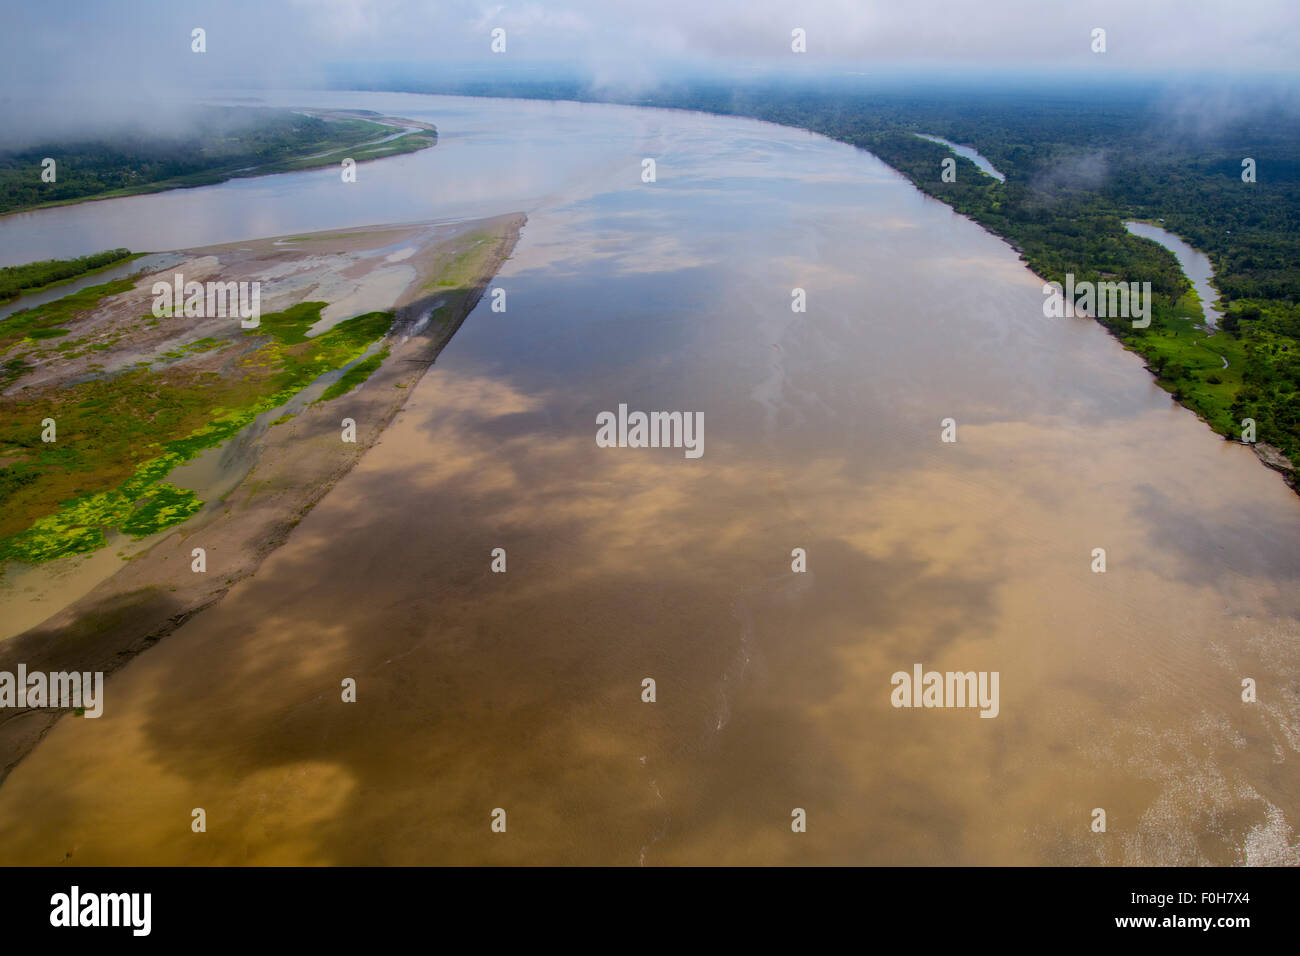 Amazon River par antenne, avec river island, près de Lima, Pérou Banque D'Images